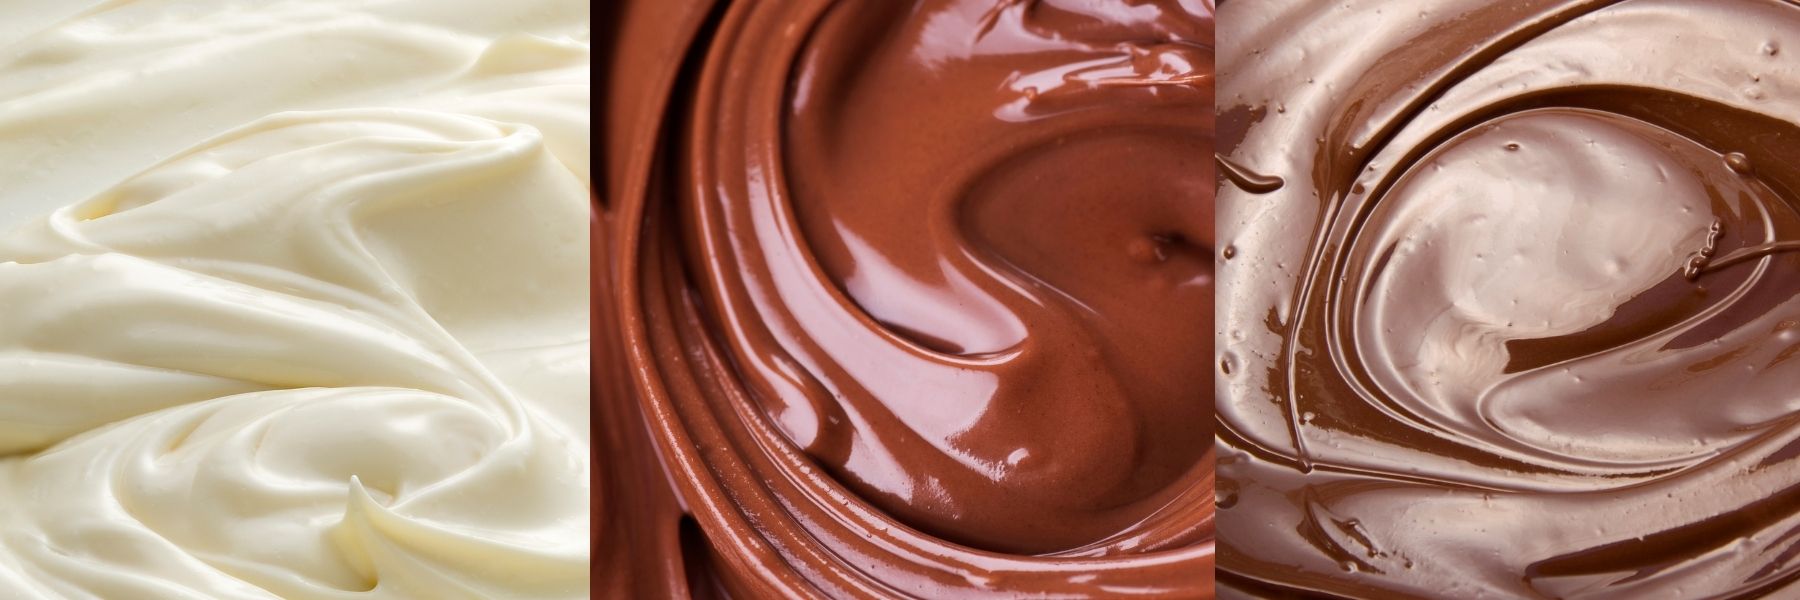 Three Different Chocolate Blends: White, Milk, and Dark Chocolate